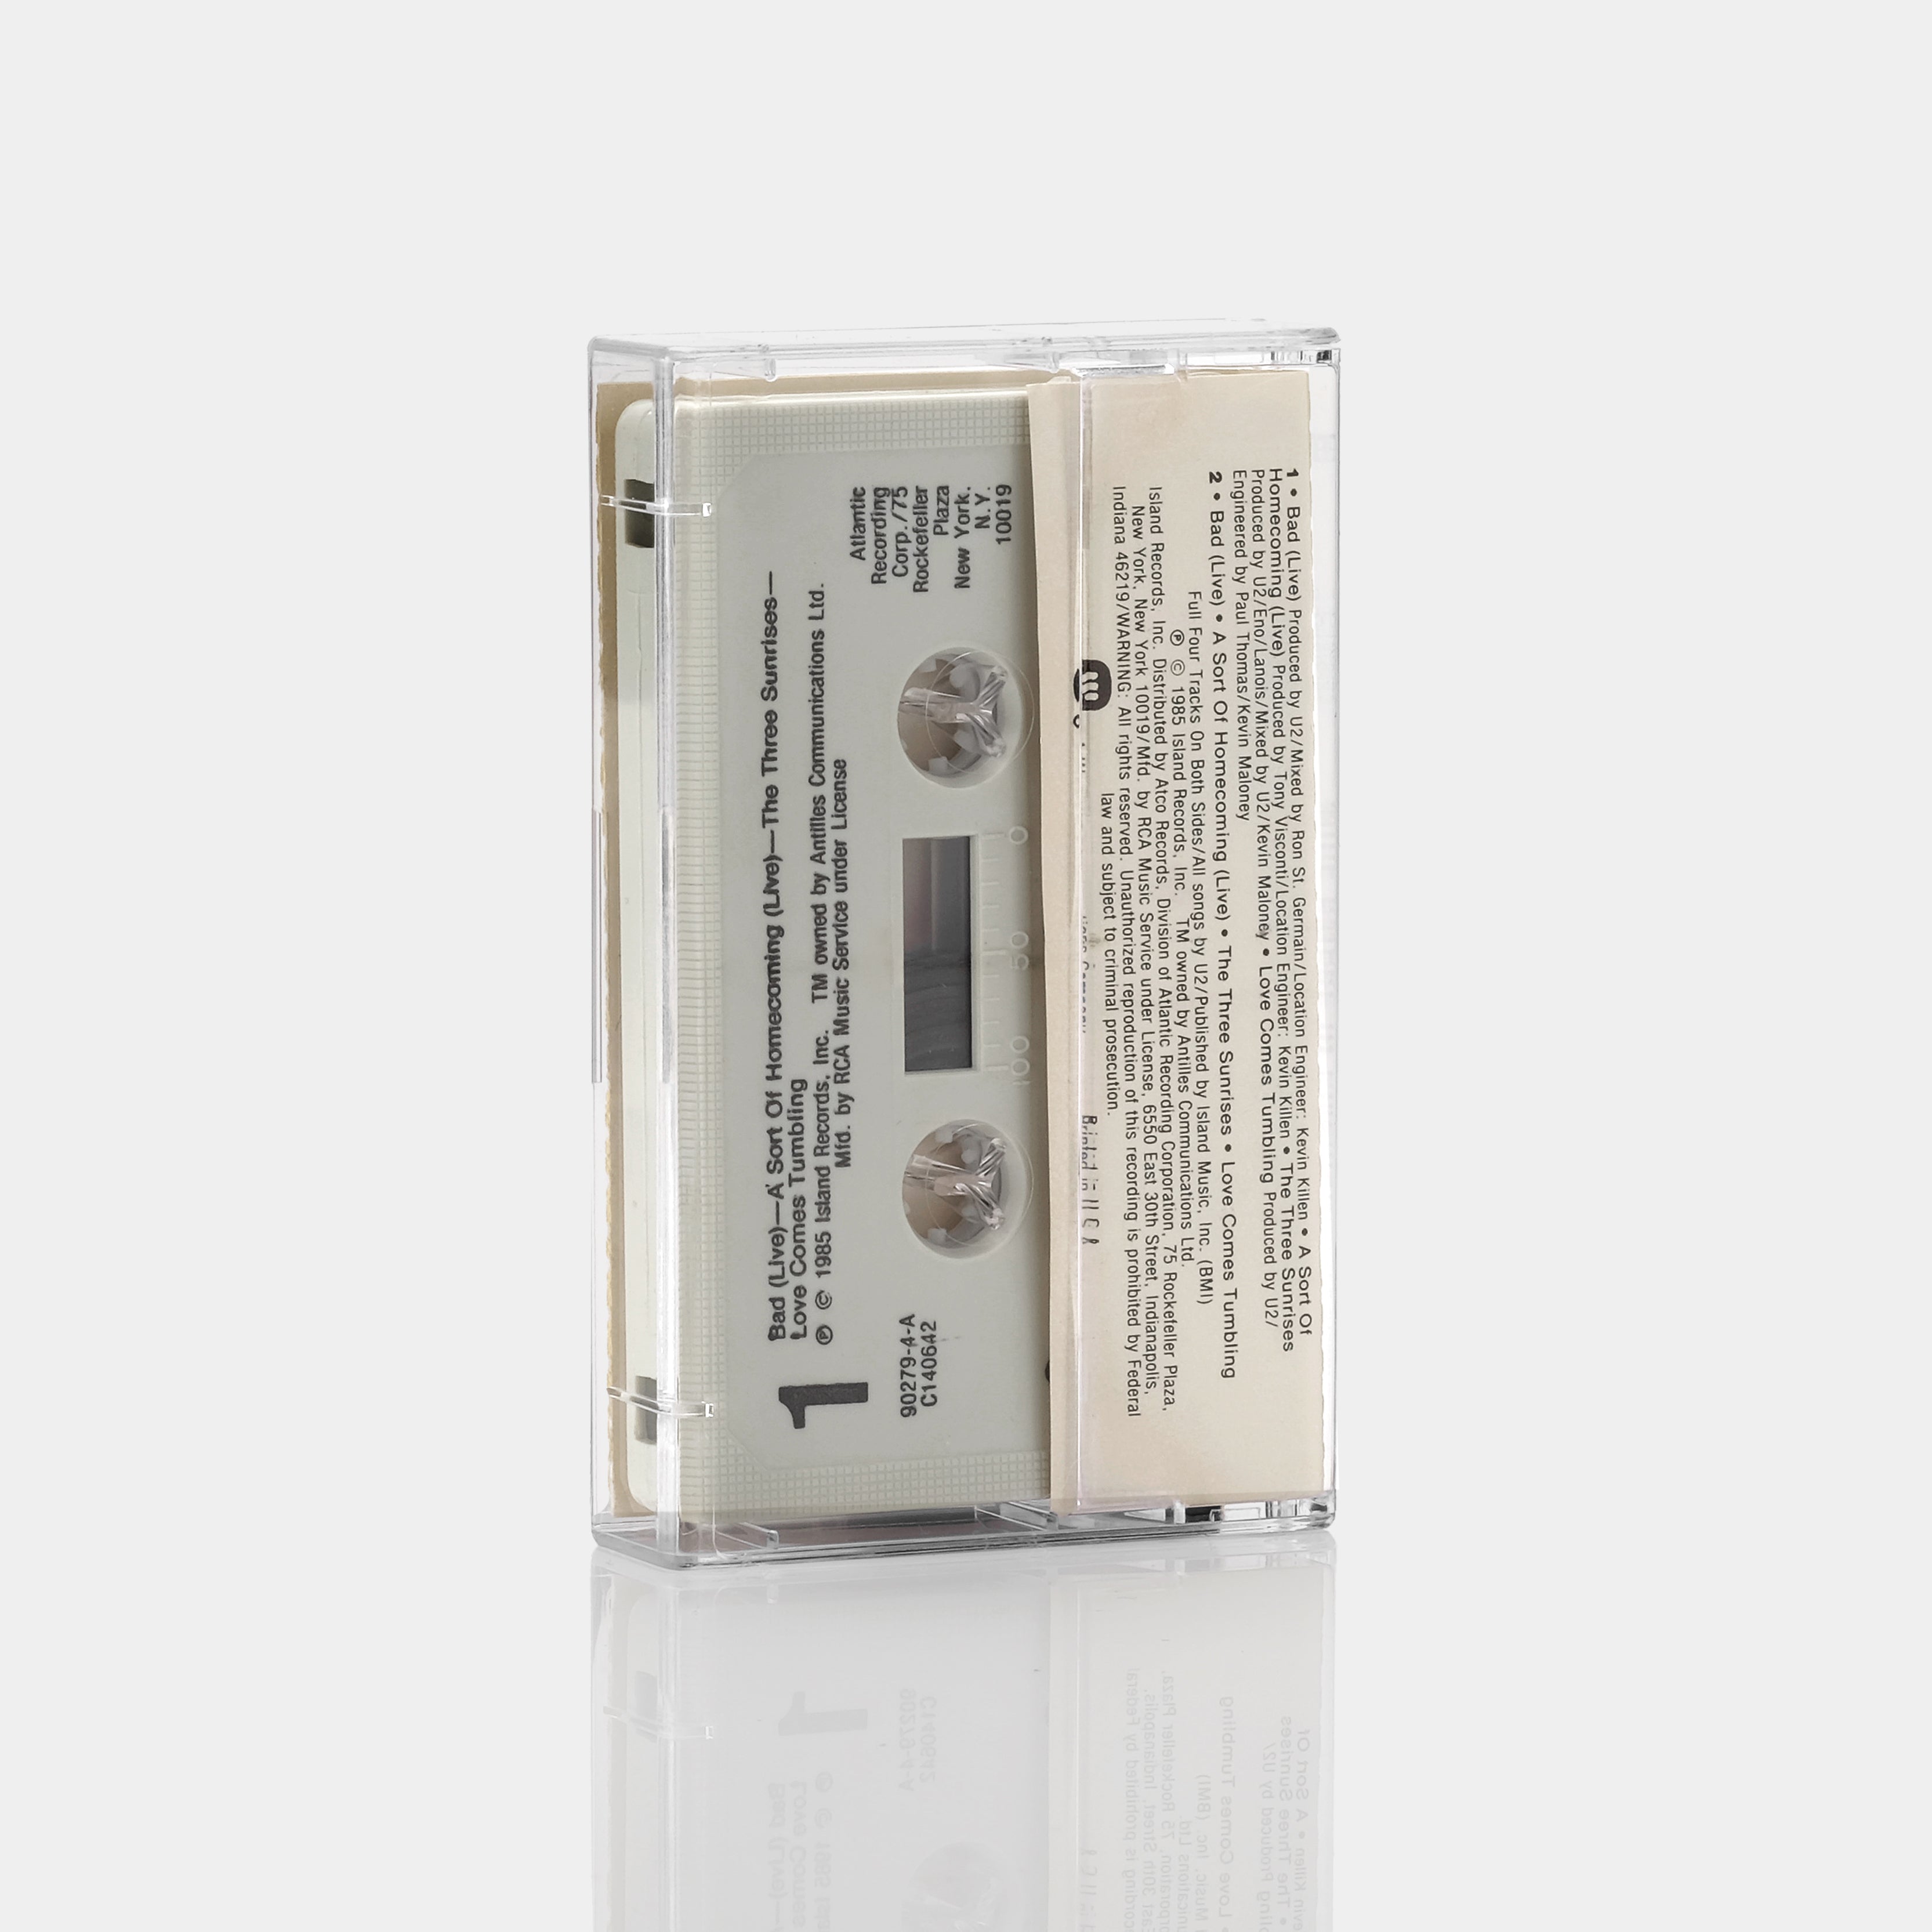 U2 - Wide Awake In America Cassette Tape